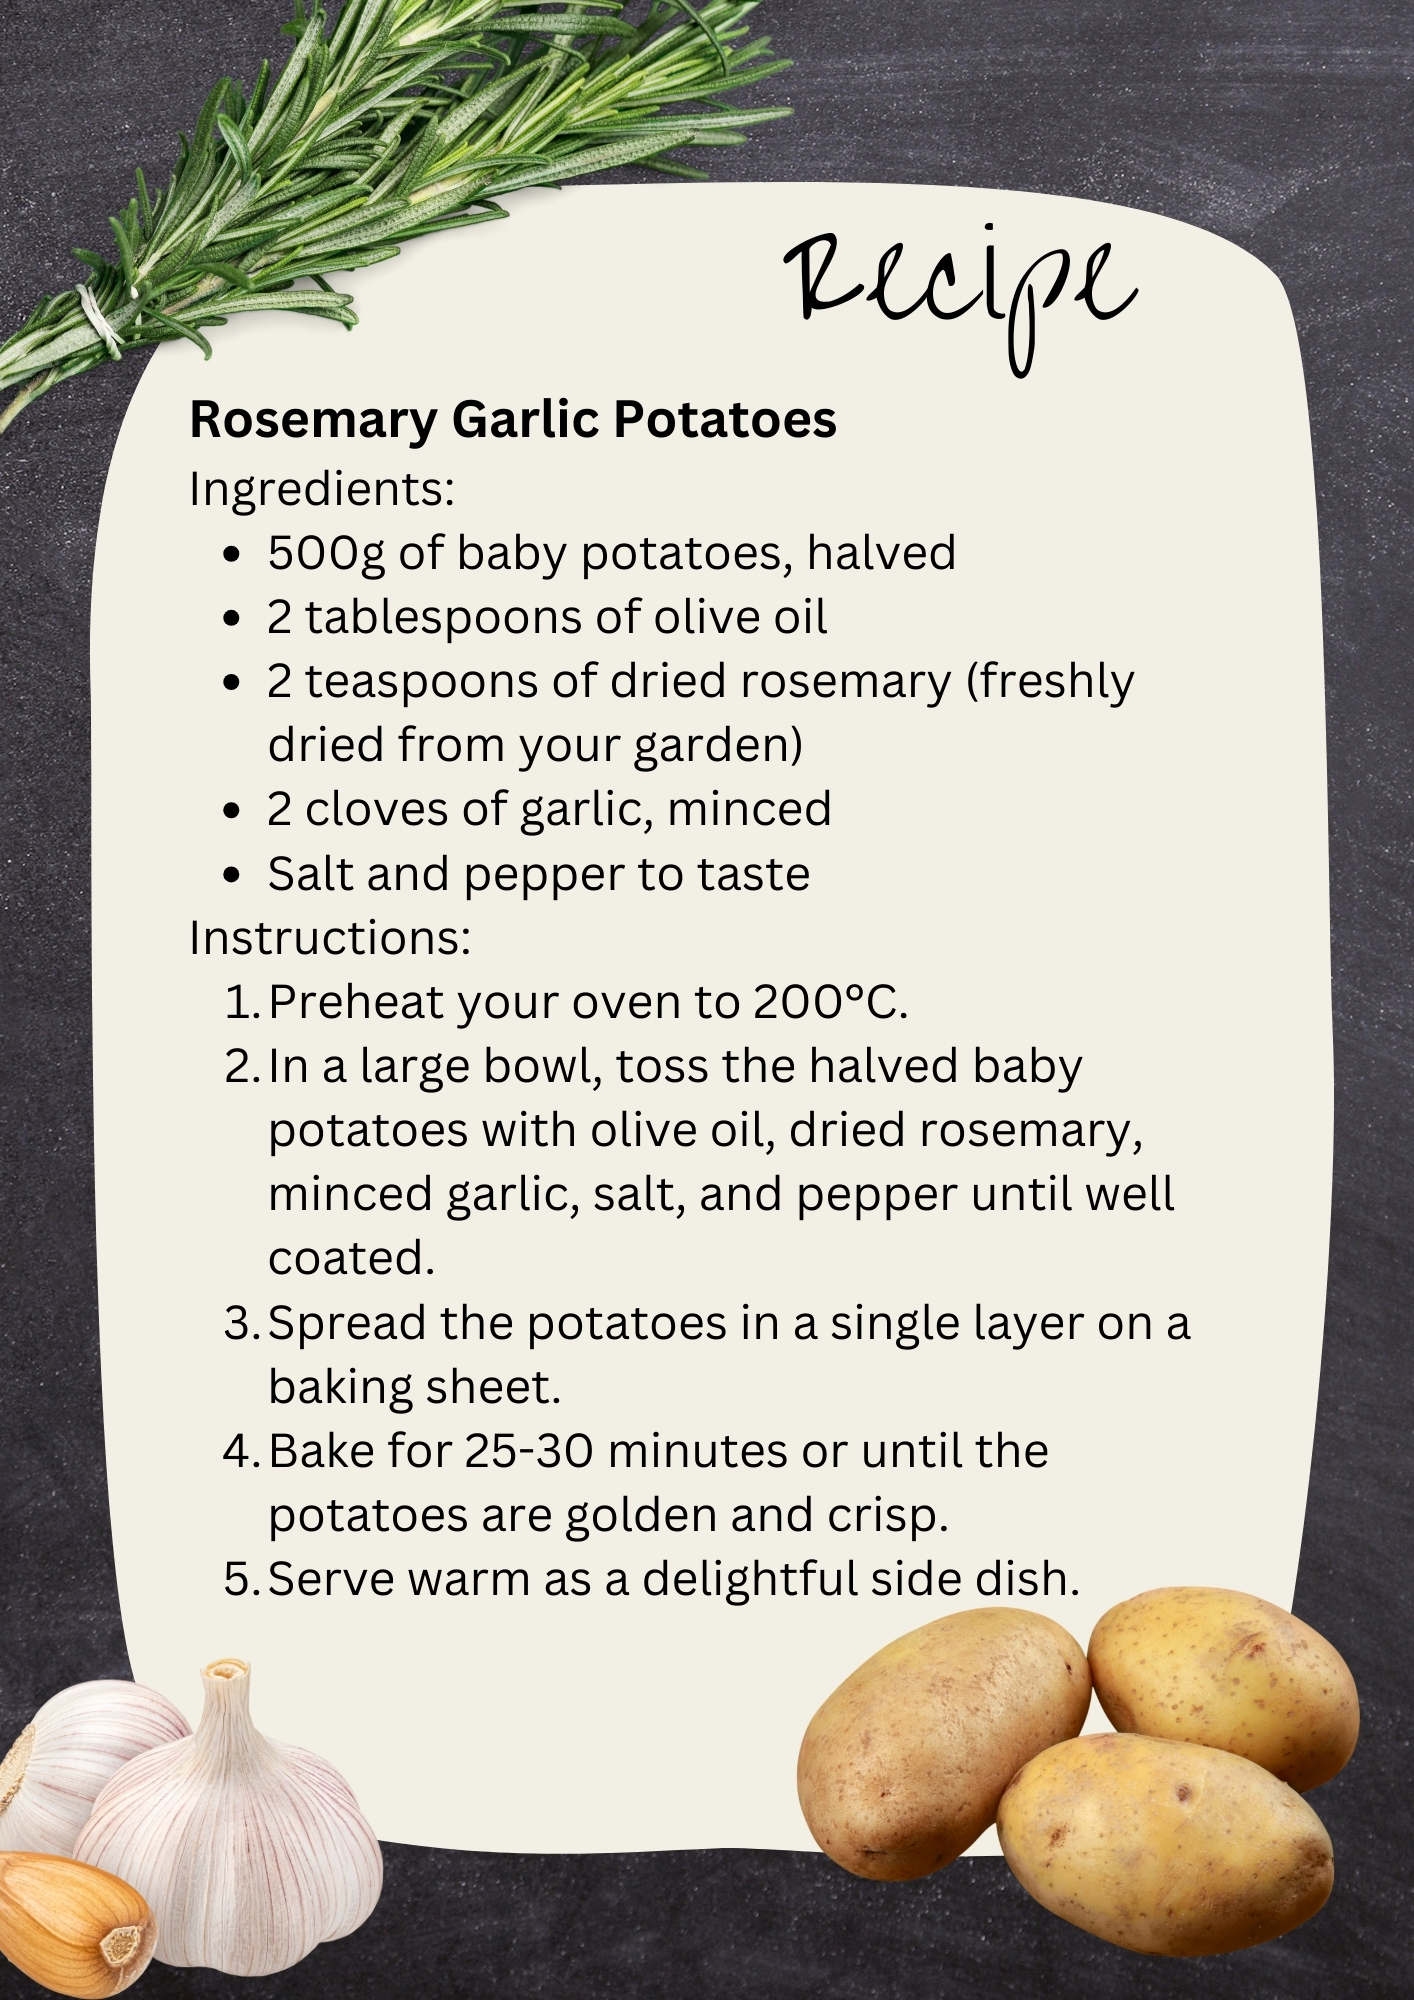 Rosemary Garlic Potatoes Recipes